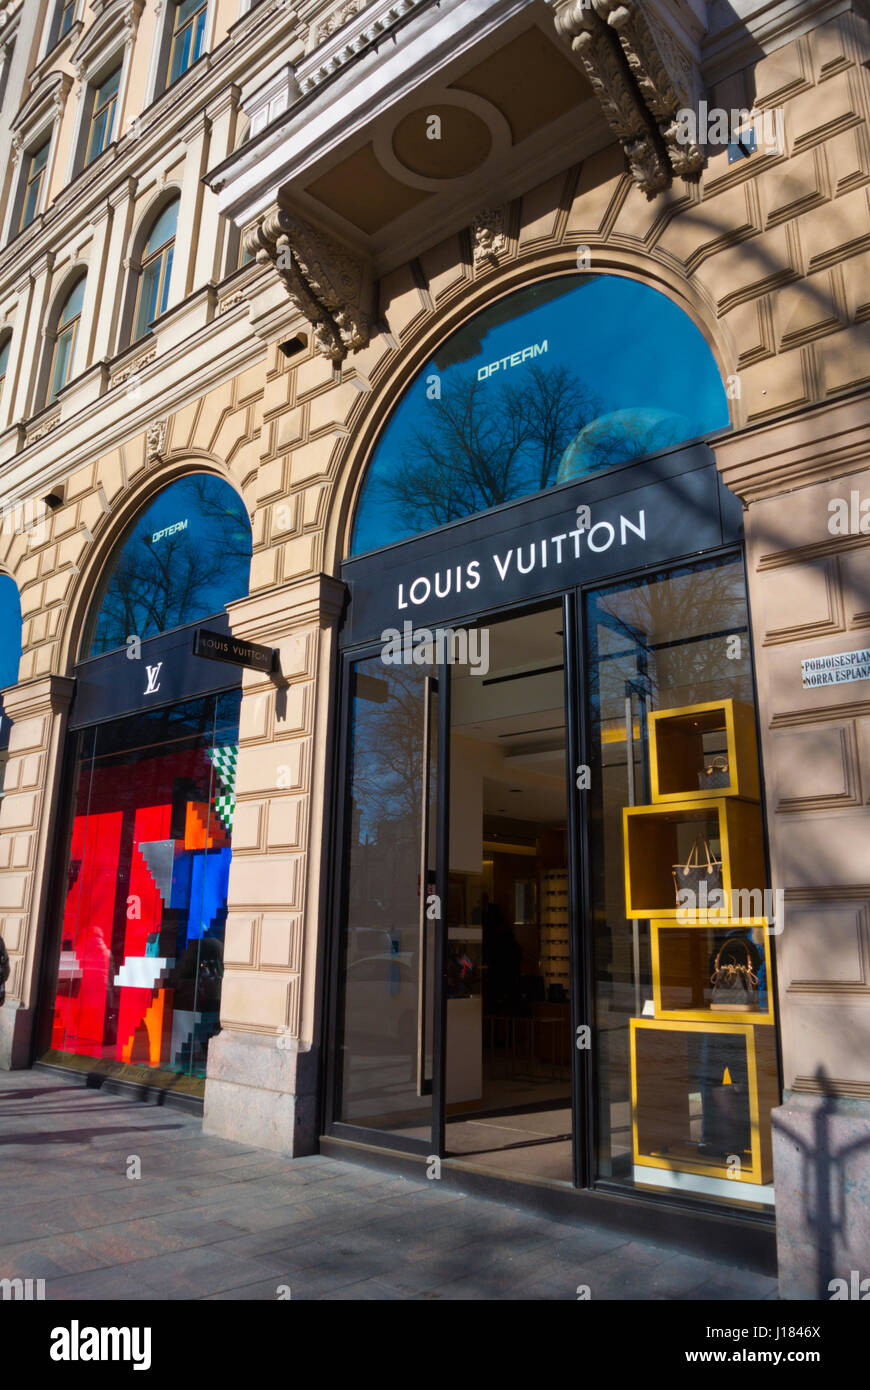 Louis Vuitton Helsinki Store - Leather goods store in Helsinki